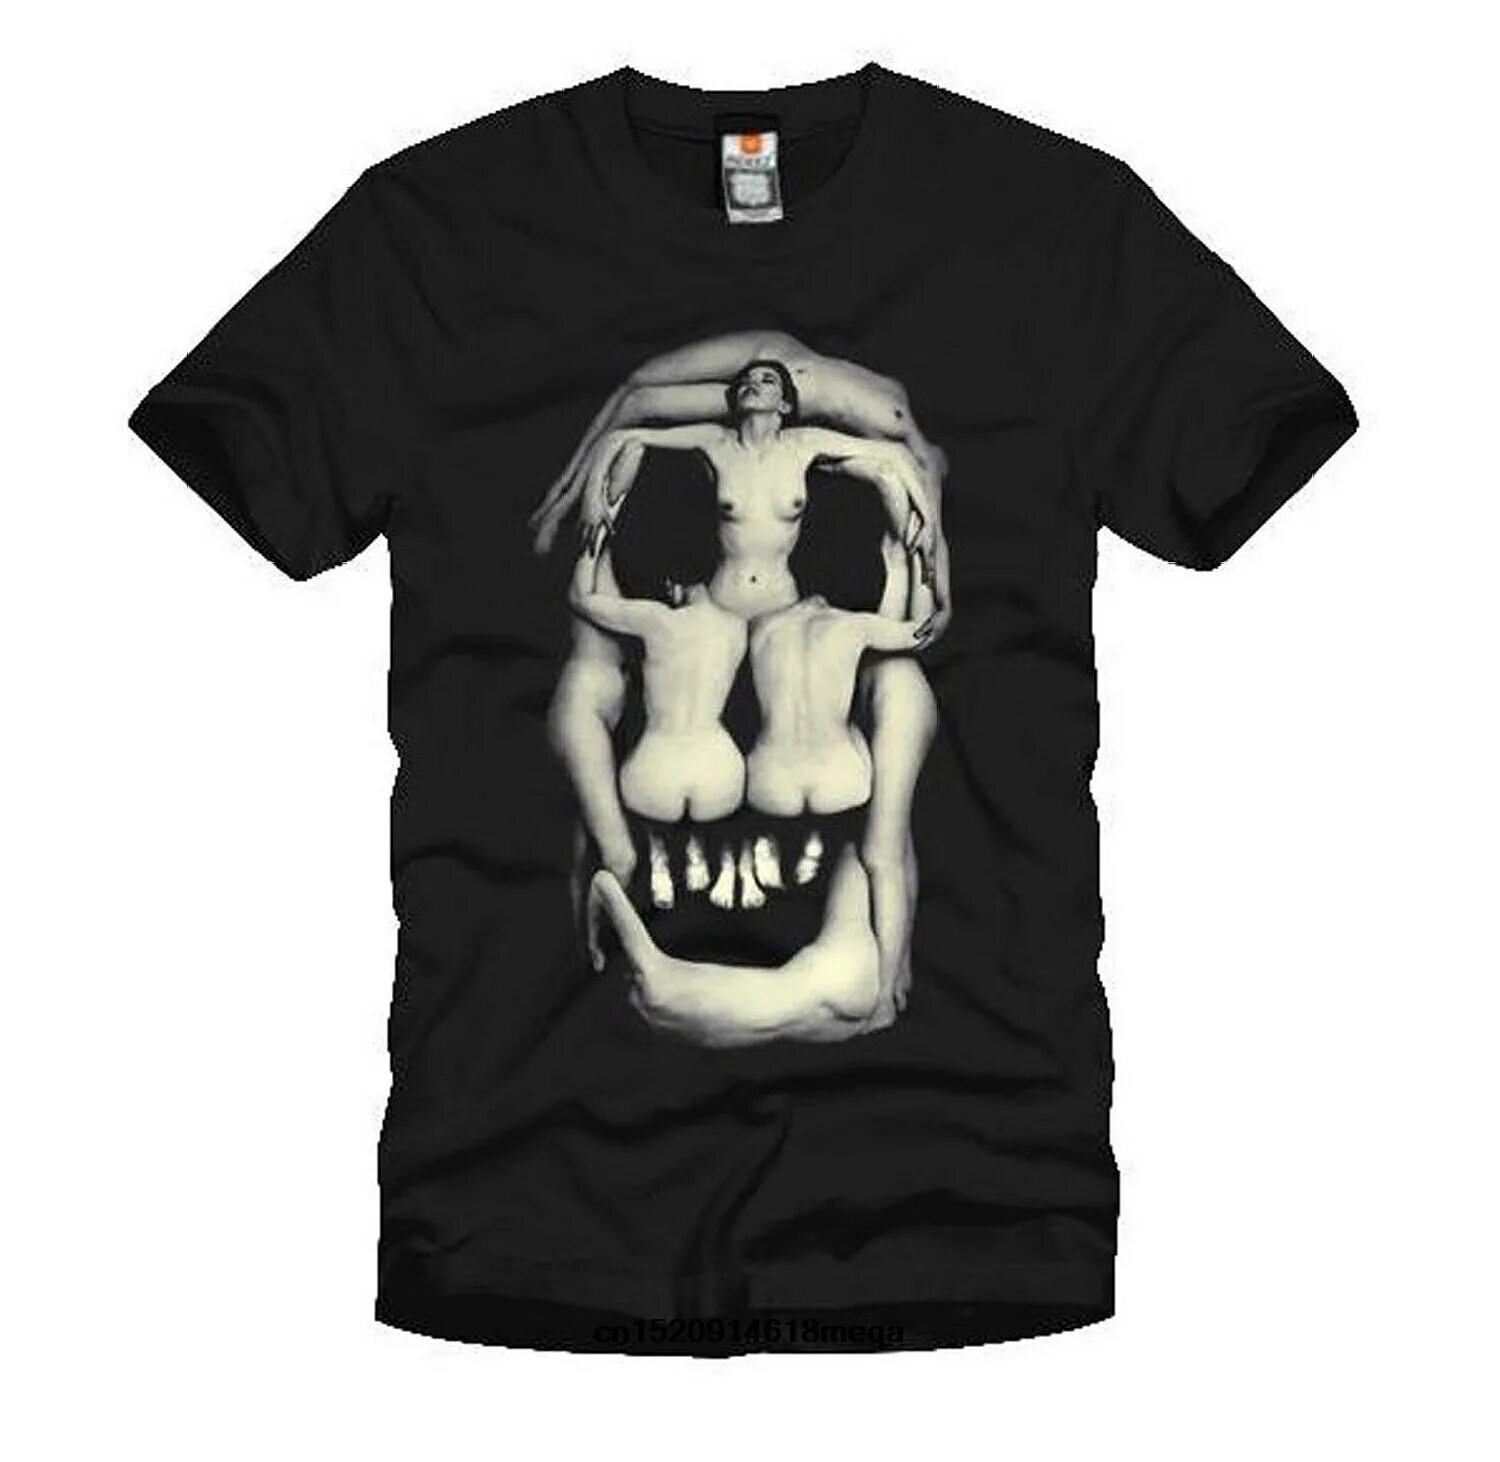 Мужская футболка Garden Skull. Salvador Dali Skull. New Yorker мужская футболка с черепом. Майка череп.